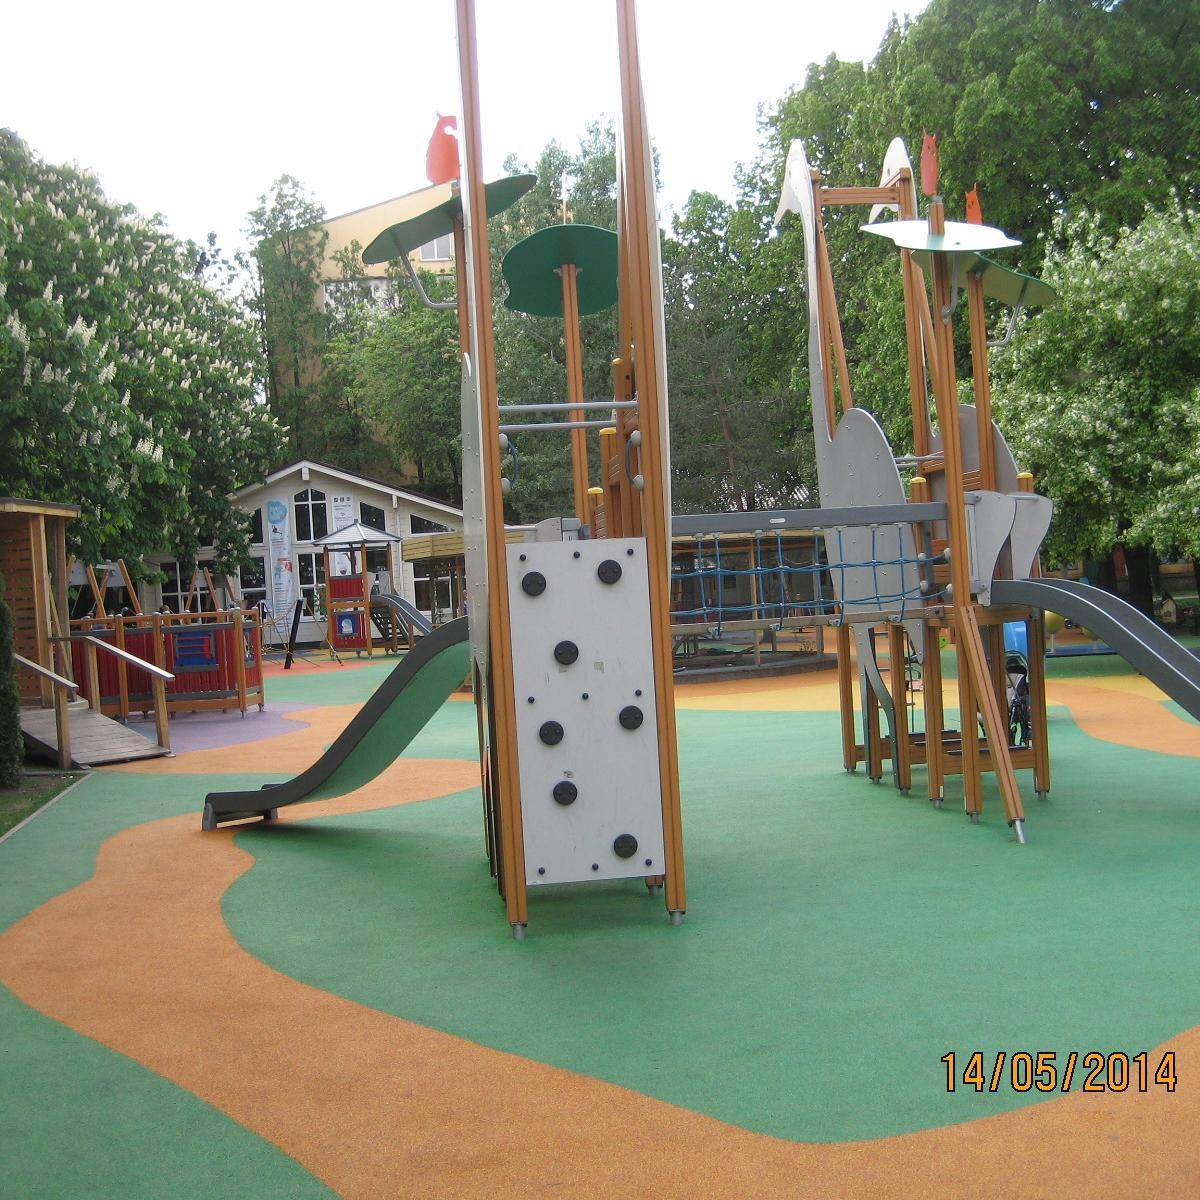 Площадка детская игровая в парке, рядом с детским клубом, Сад Эрмитаж -  map4child.ru